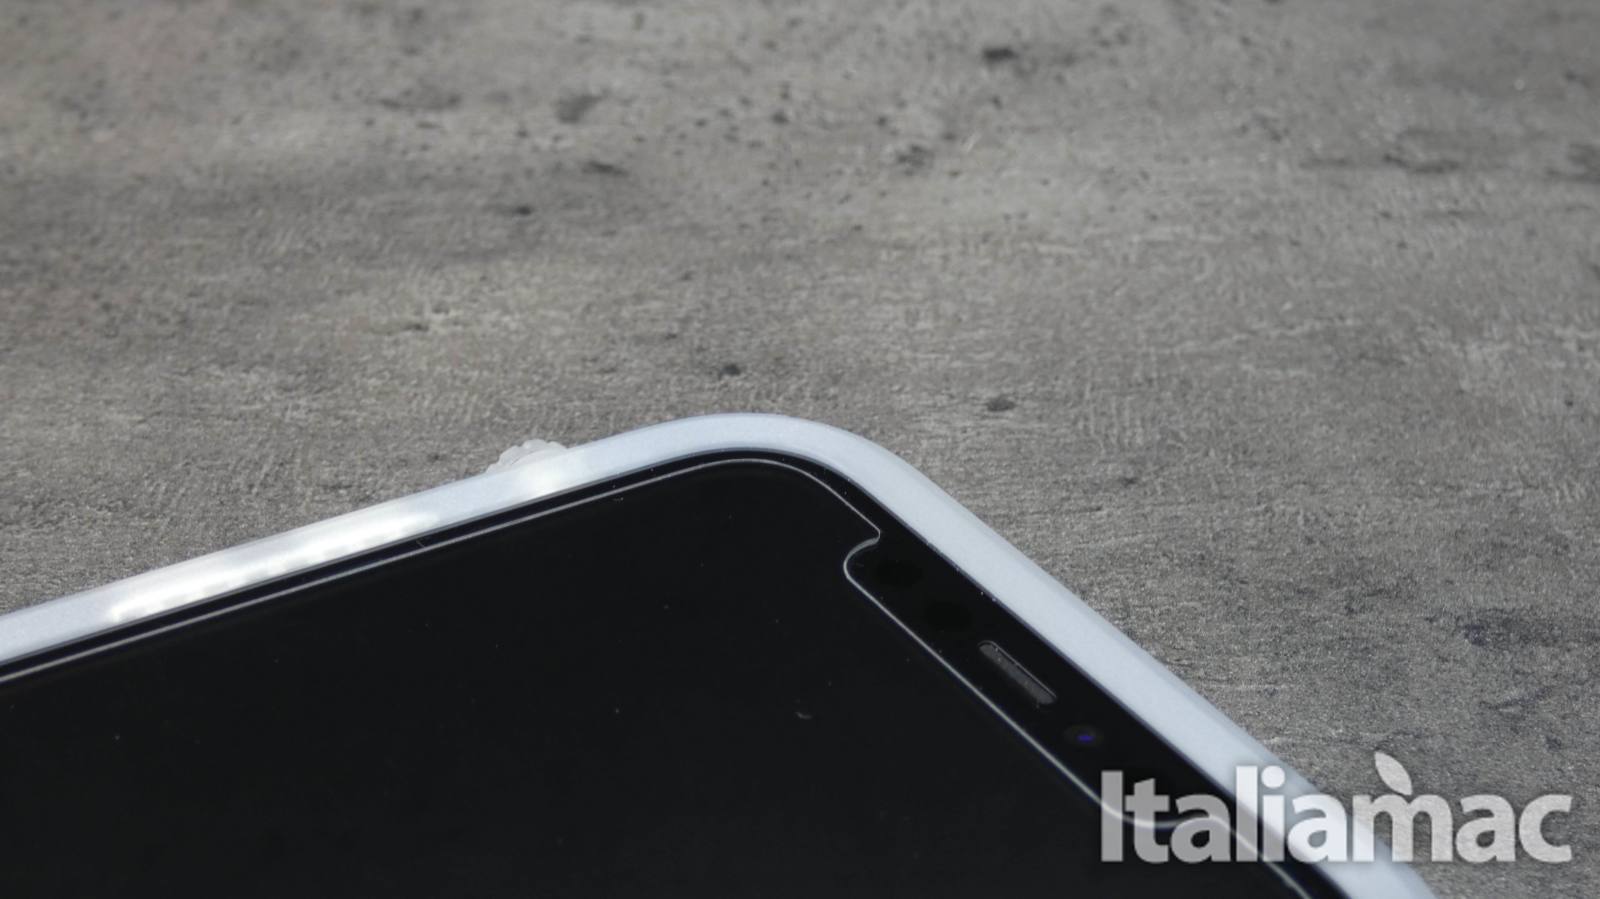 Catalyst Impact Protection Case per iPhone 11 resiste alle cadute da 3 metri 6